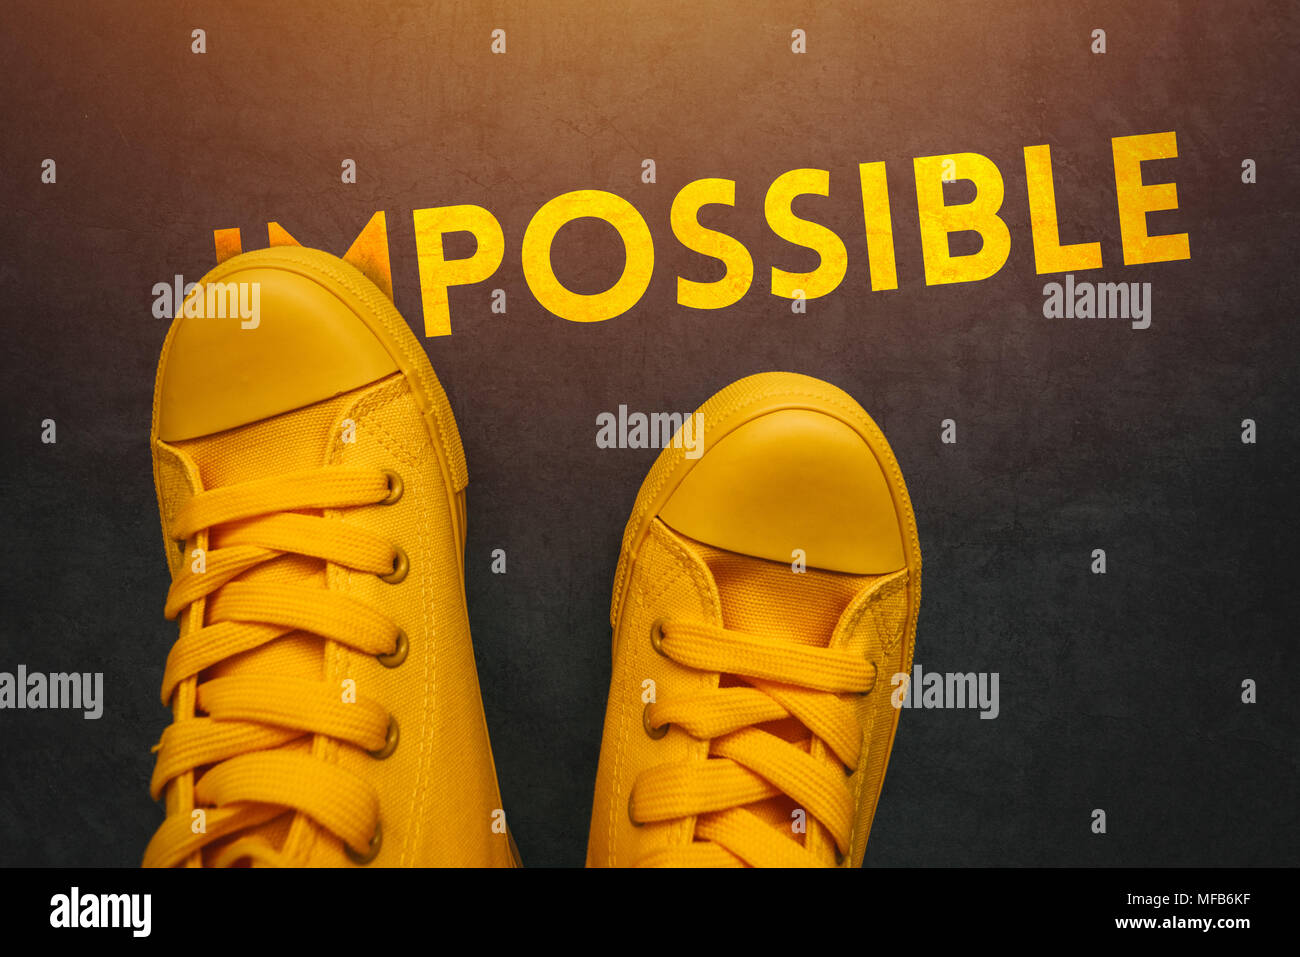 Les jeunes peuvent faire des choses possibles, conceptual image avec personne en jaune sneakers couvrant une partie du mot impossible pour qu'il change complètement i Banque D'Images